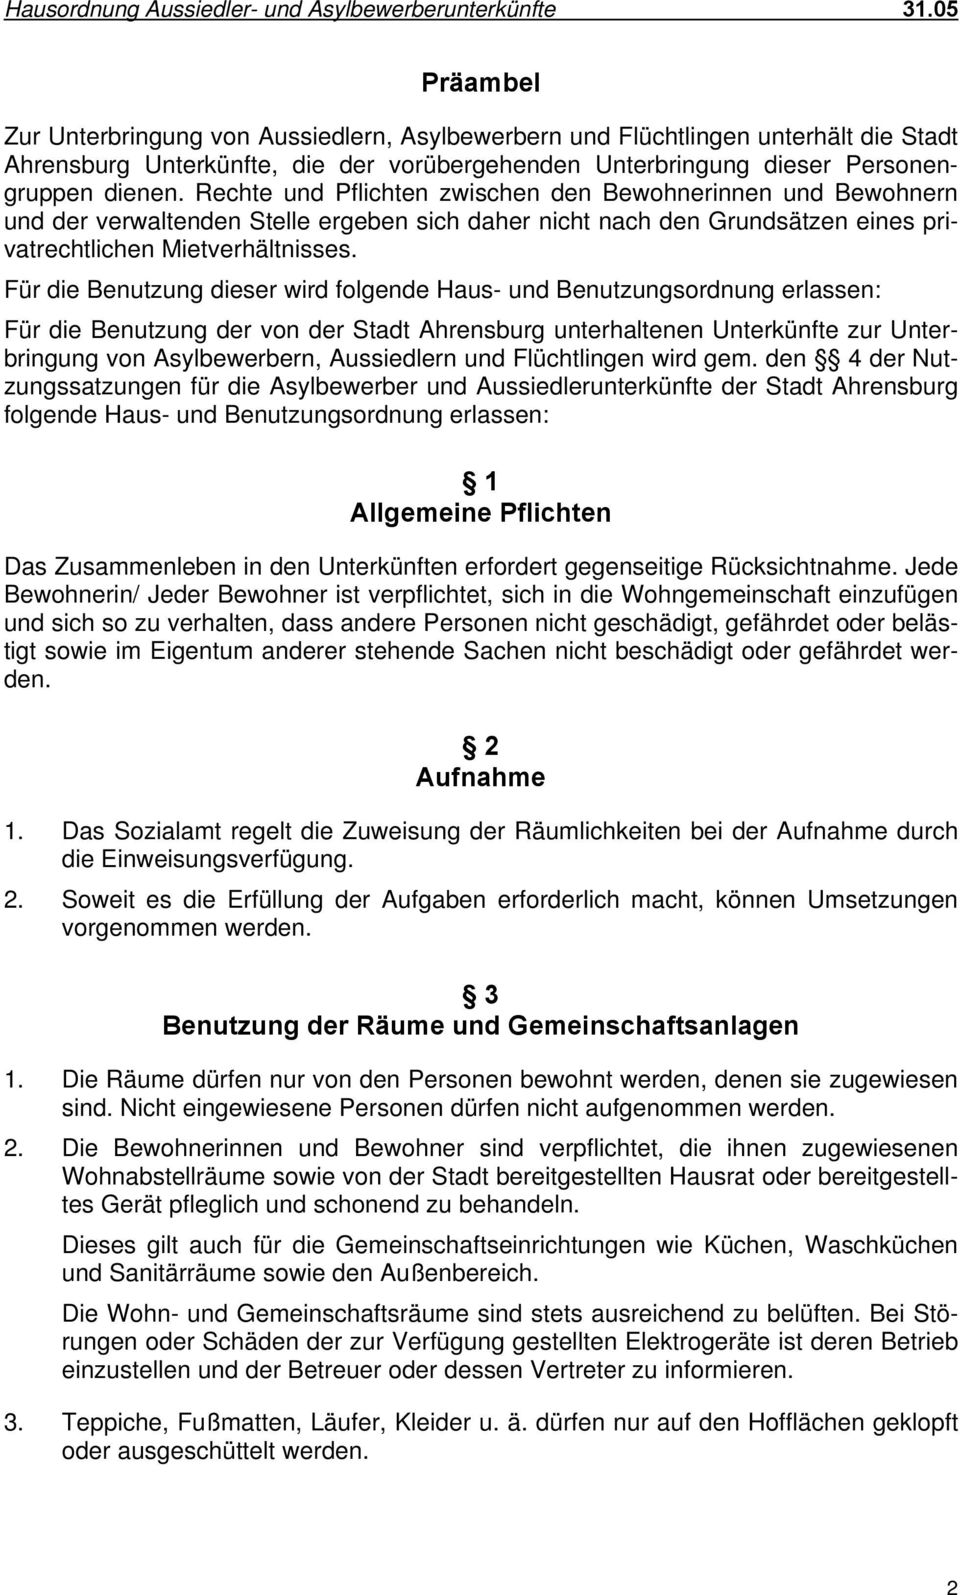 Für die Benutzung dieser wird folgende Haus- und Benutzungsordnung erlassen: Für die Benutzung der von der Stadt Ahrensburg unterhaltenen Unterkünfte zur Unterbringung von Asylbewerbern, Aussiedlern